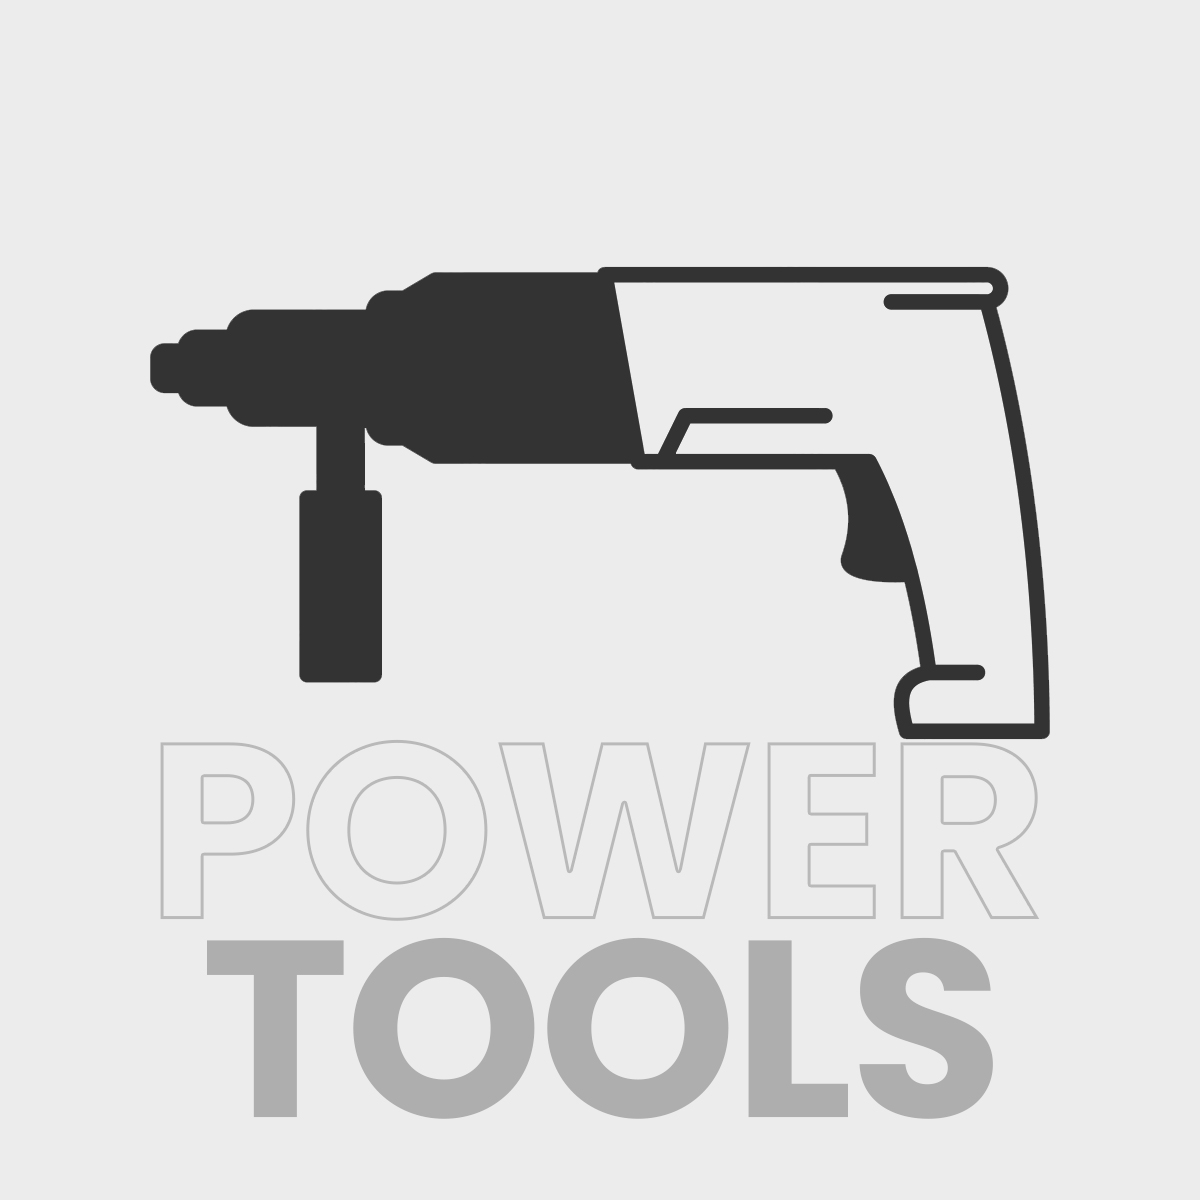 tools1